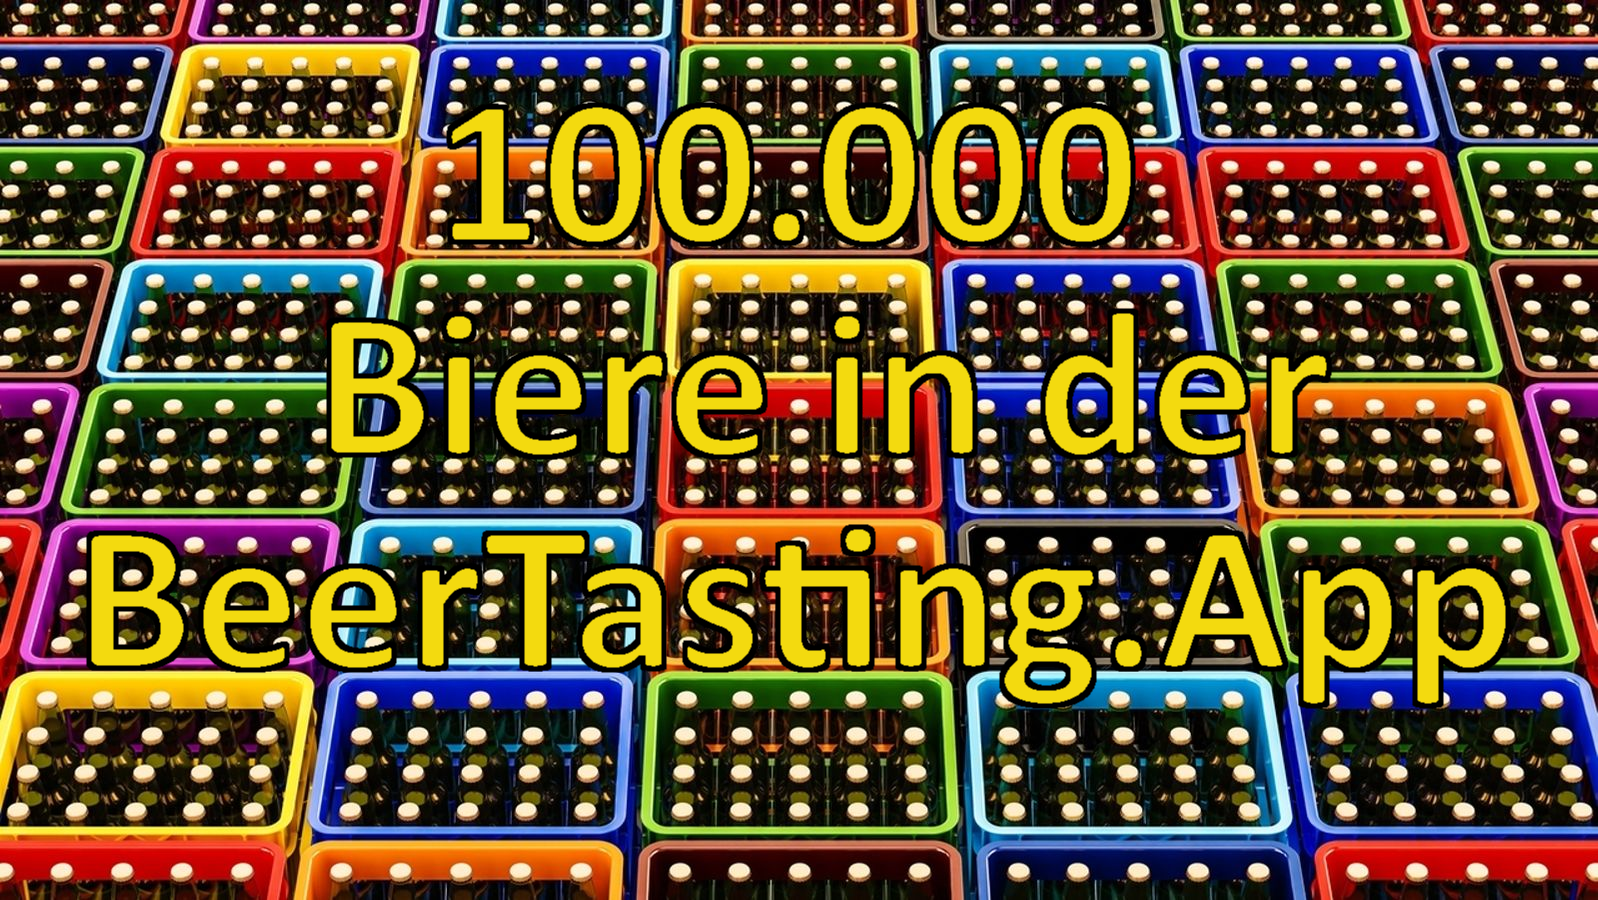 100.000 Biere in der BeerTasting App